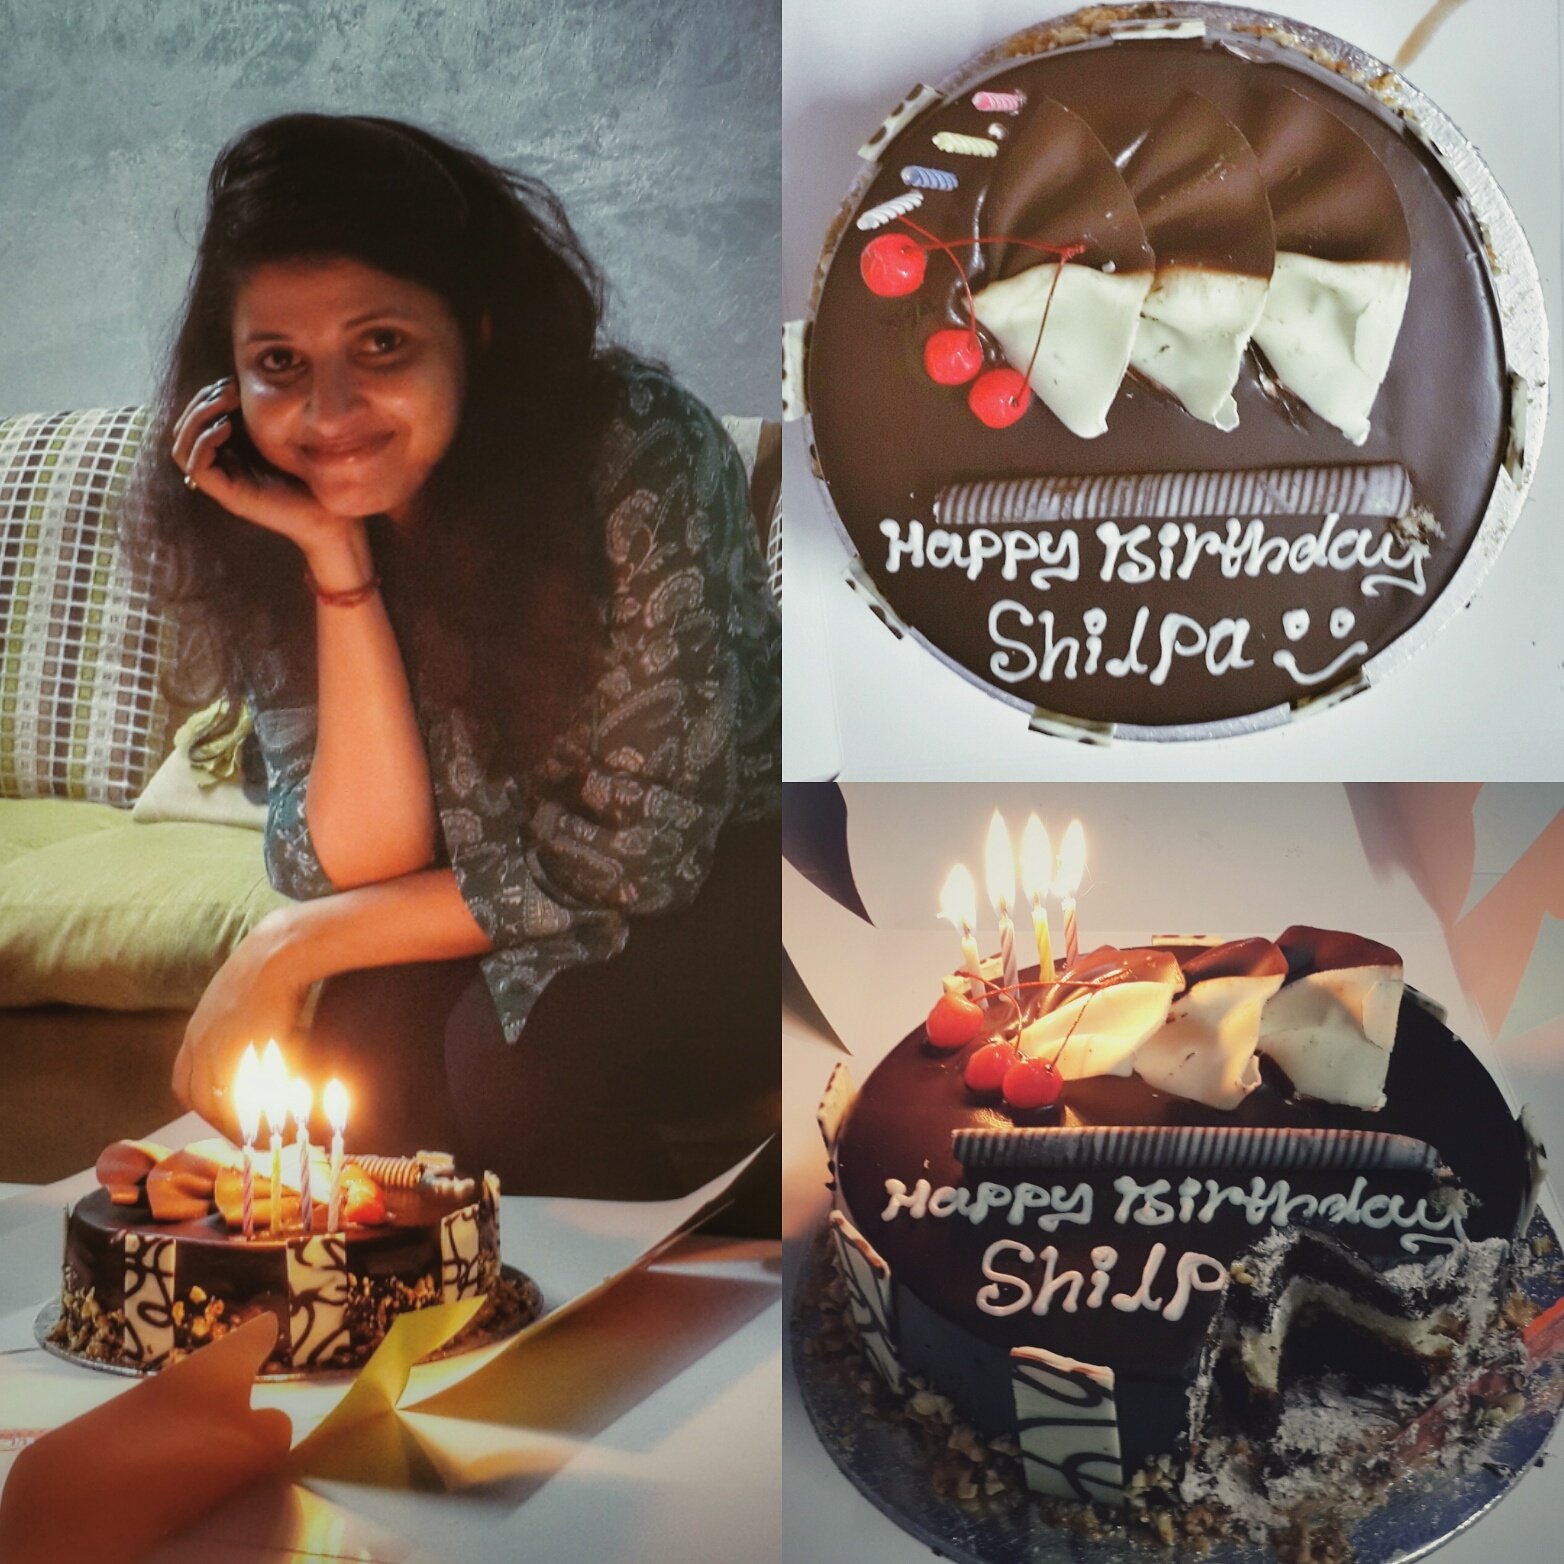 Shamita Shetty cuts cake on her birthday, poses with sister Shilpa Shetty